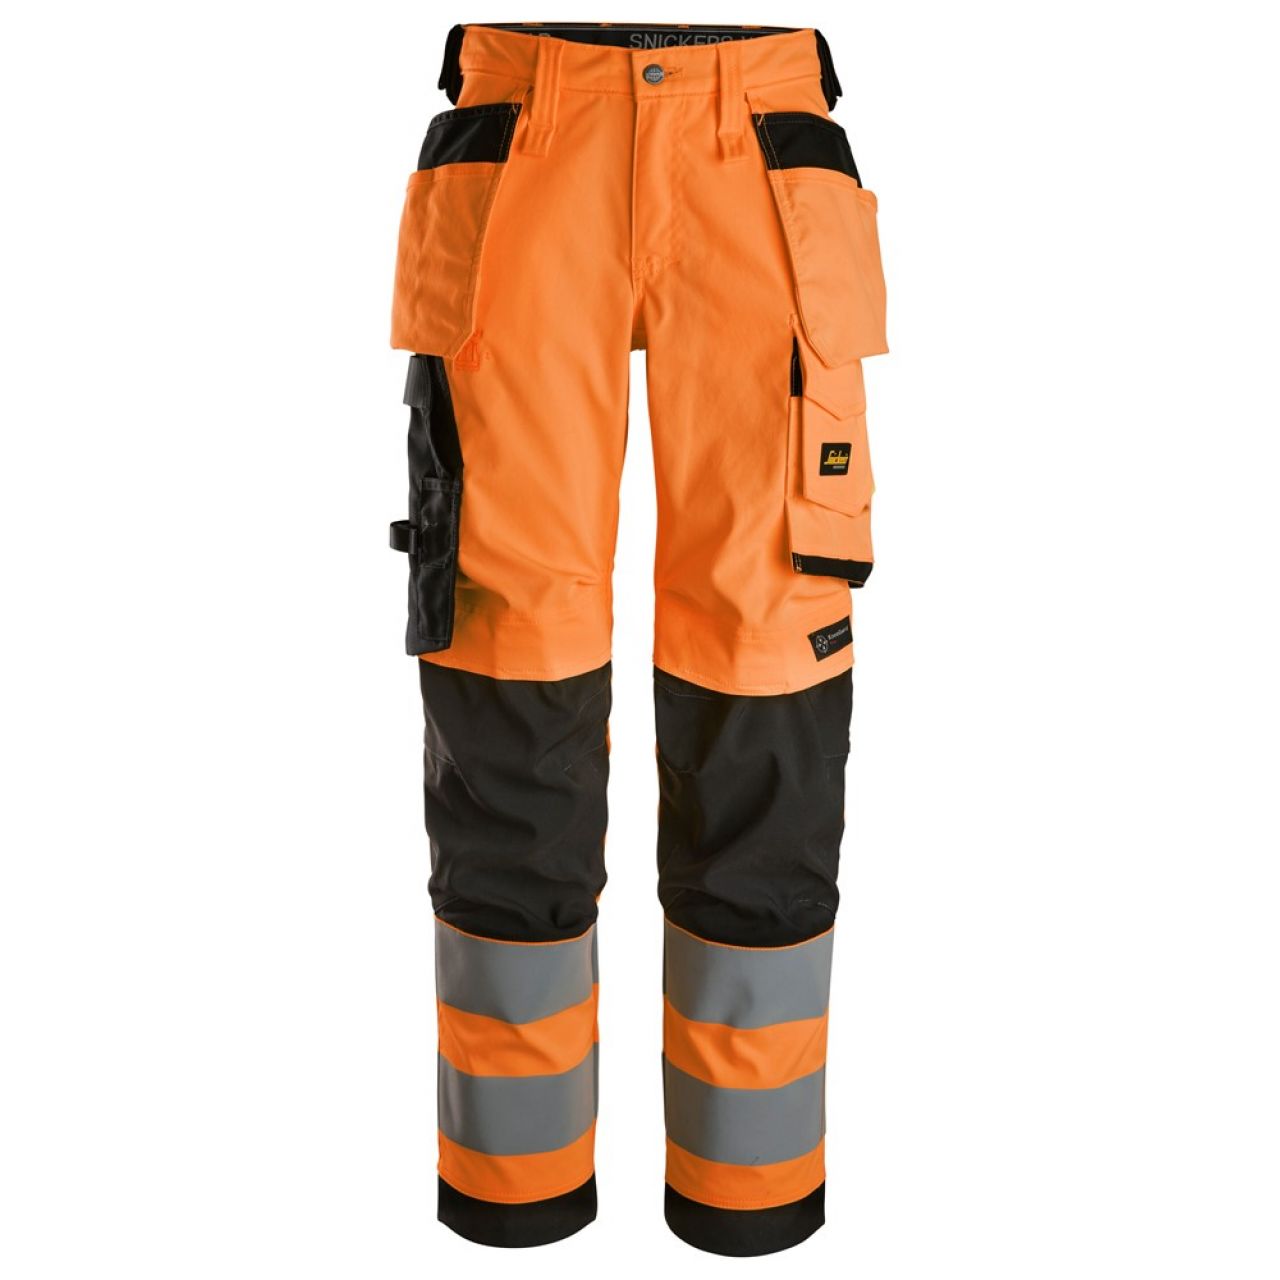 6743 Pantalones largos de trabajo elásticos de alta visibilidad clase 2 para mujer con bolsillos flotantes naranja-negro talla 44